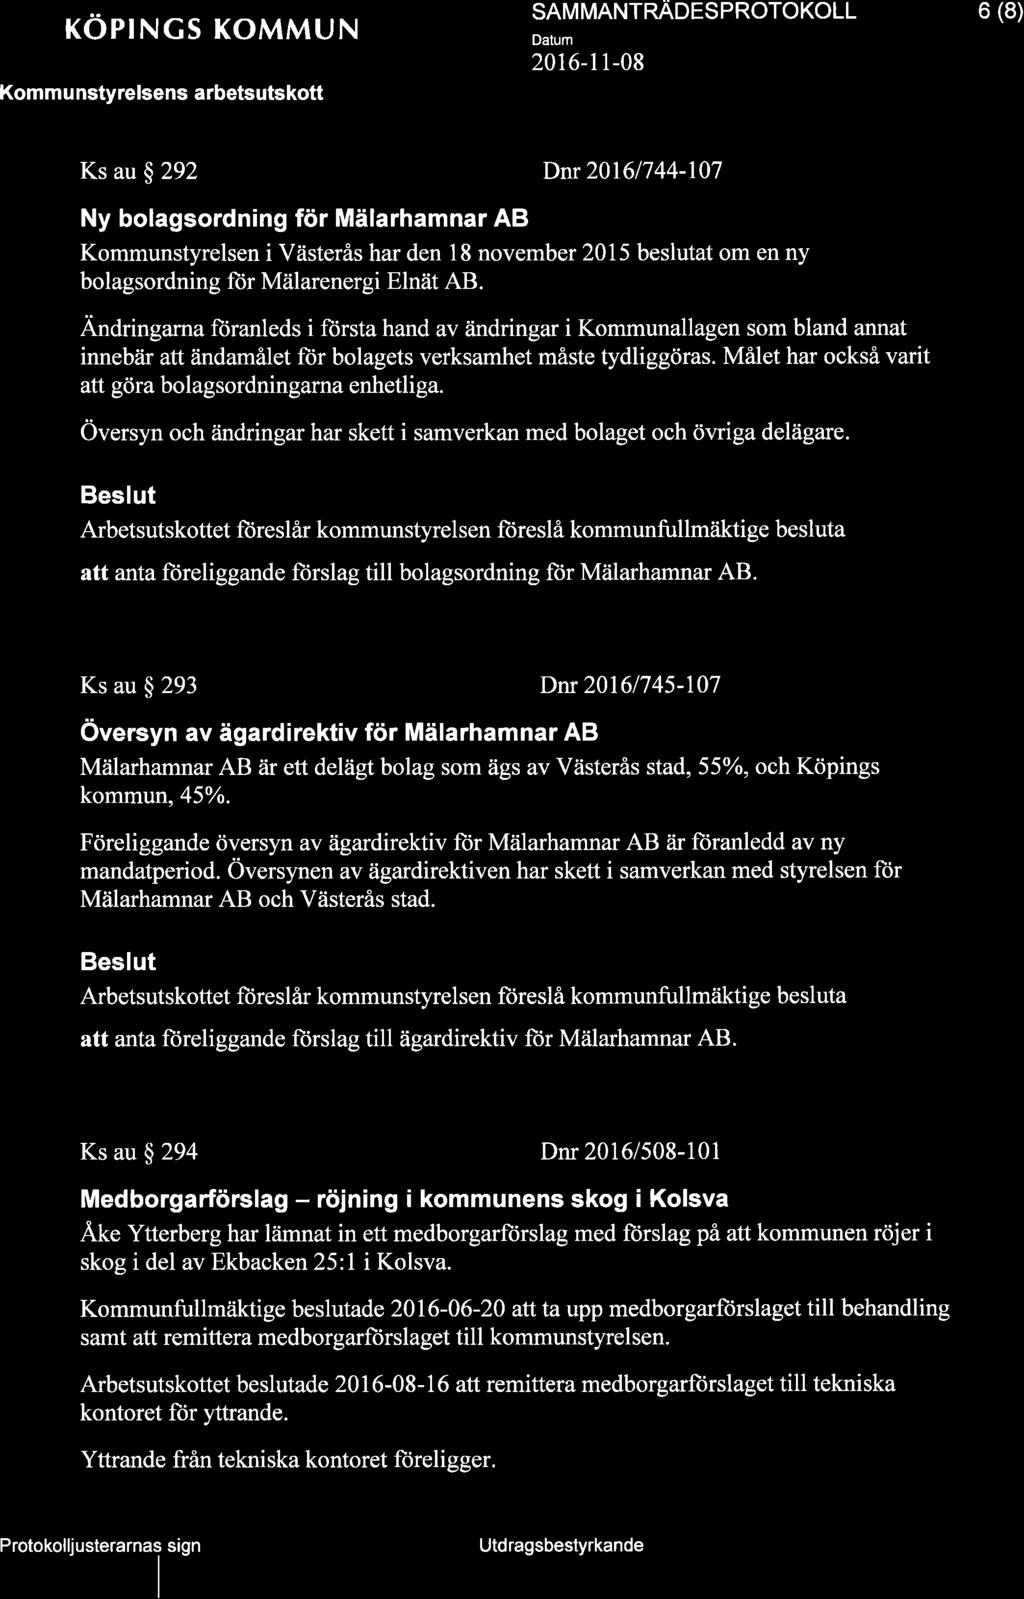 xöprncs KoMMUN Komm u nstyrelsens arbetsutskott SAM MANTRADESPROTOKOLL 2016-l 1-08 6 (8) Ks au S 292 Dnr20161744-107 Ny bolagsordning för Mälarhamnar AB Kommunstyrelsen i Västerås har den 18 november